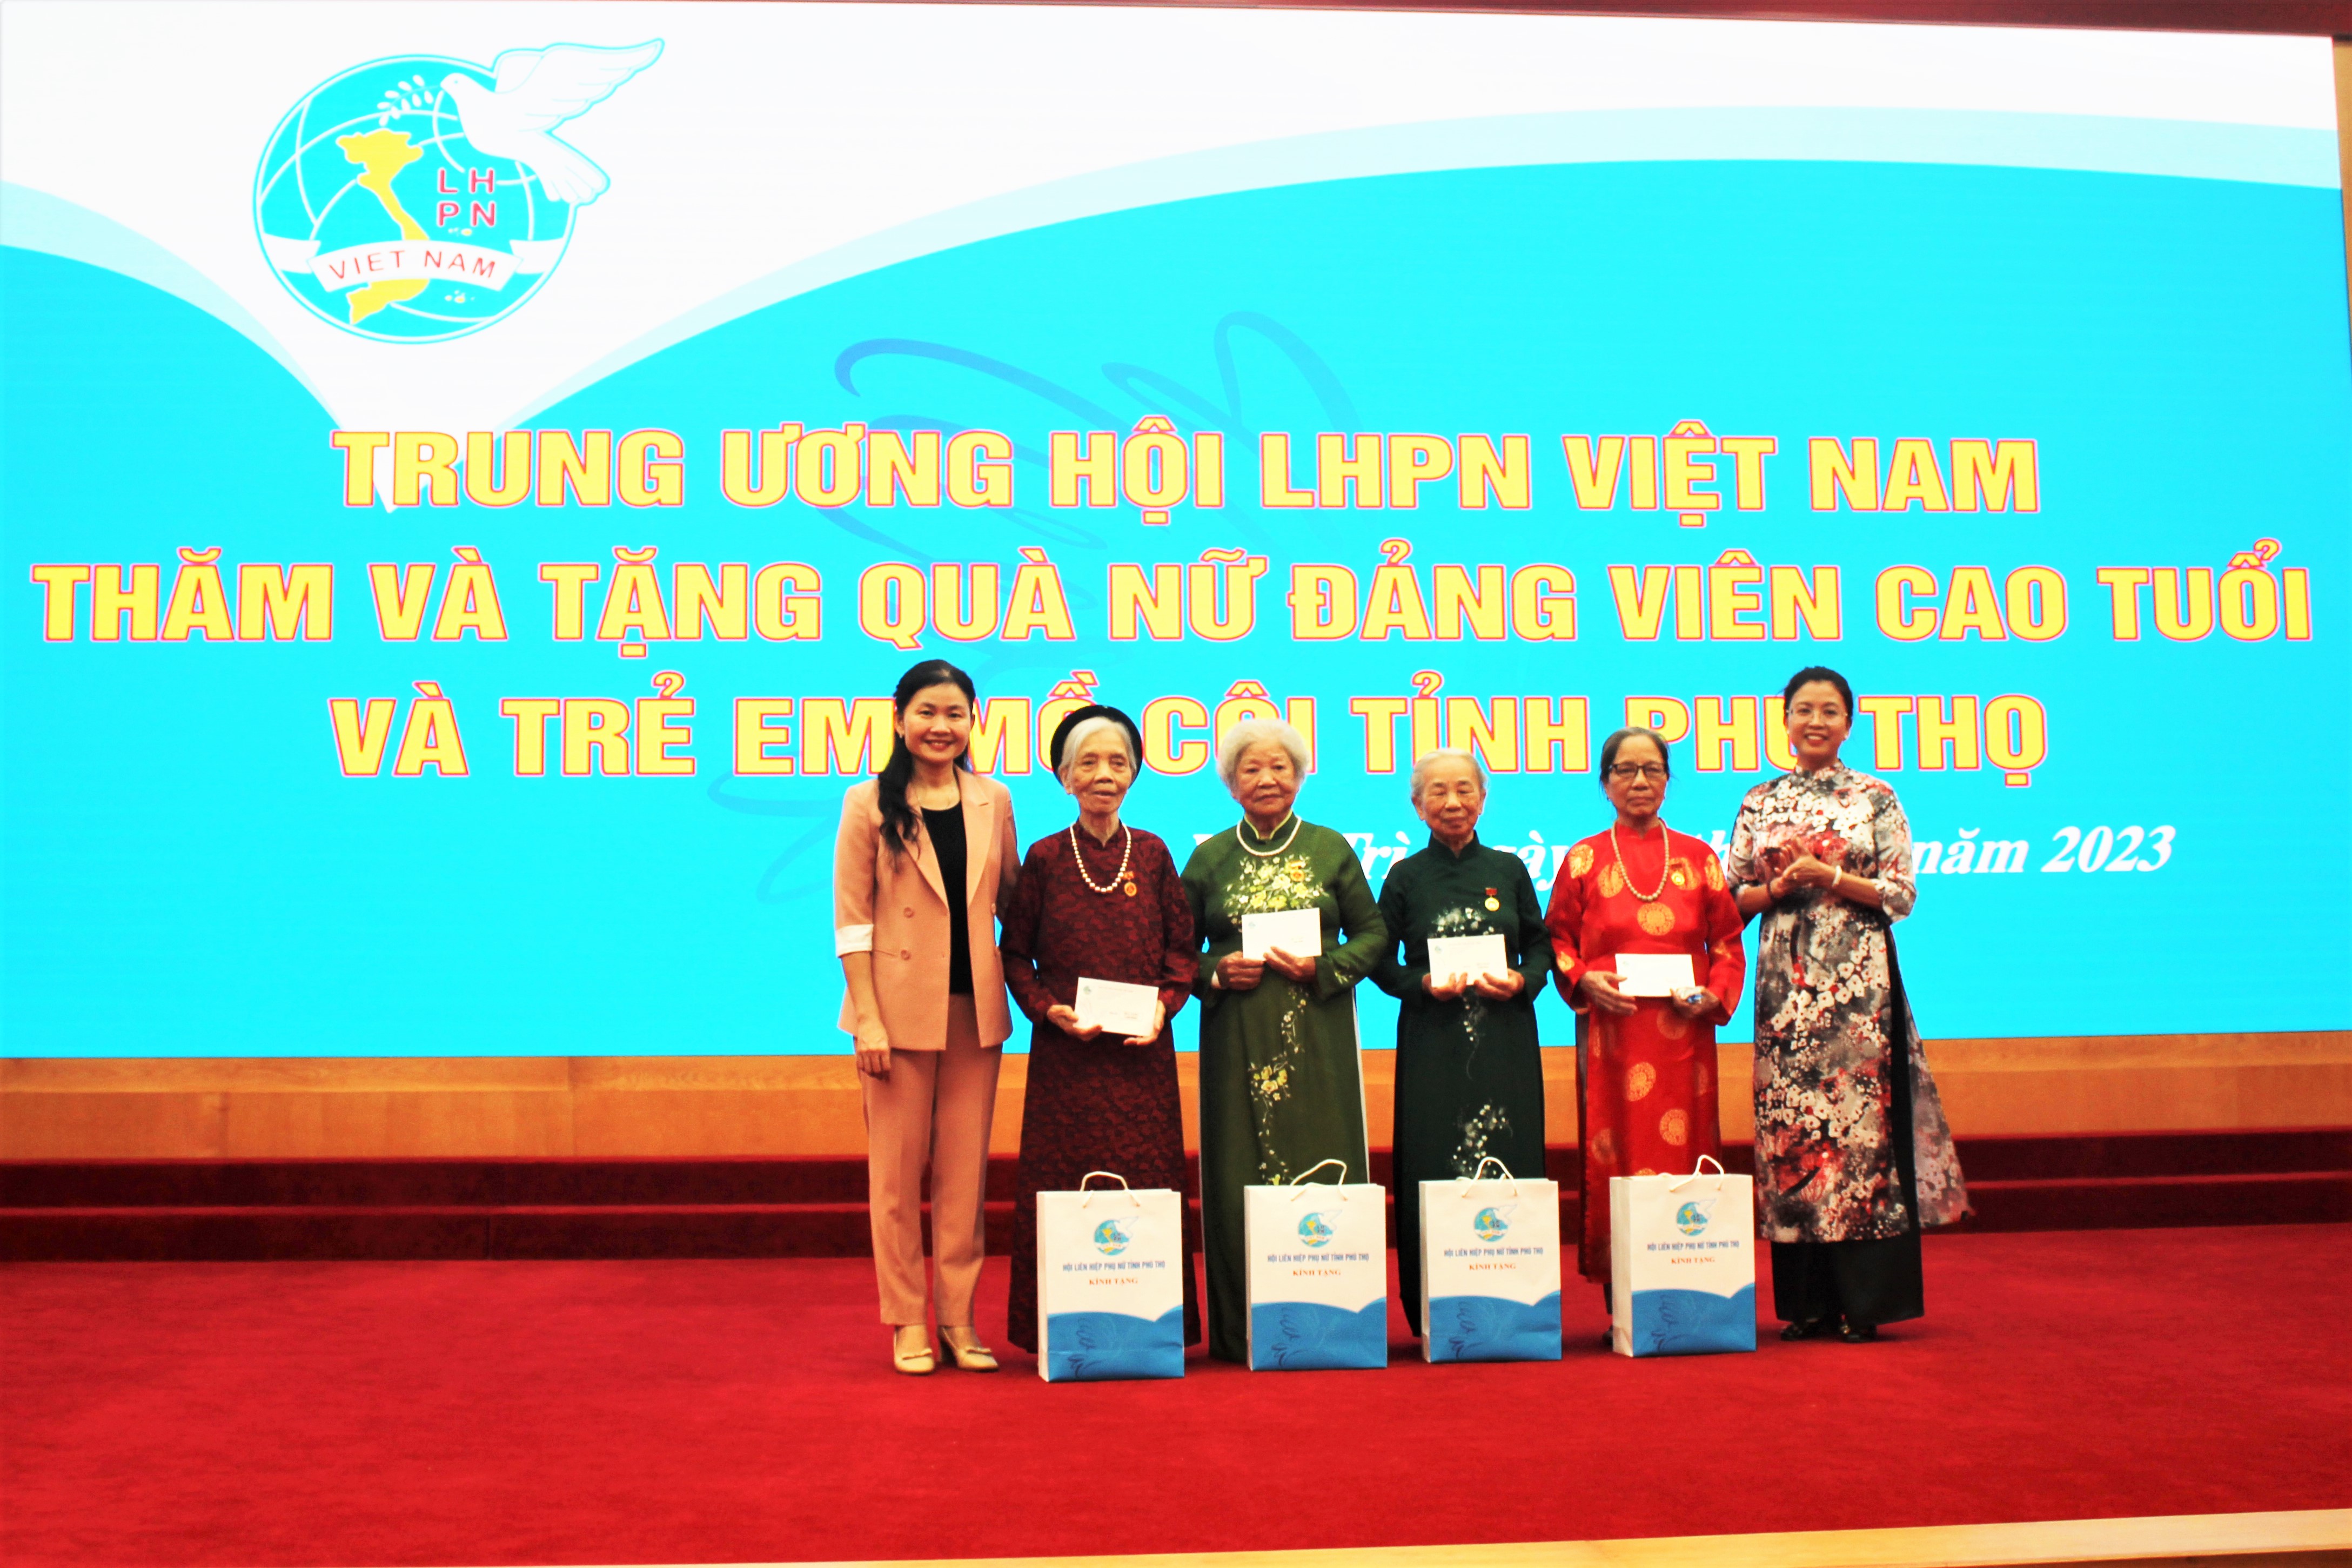 Trung Ương Hội LHPN Việt Nam thăm, tặng quà nữ đảng viên cao tuổi và trẻ em mồ côi